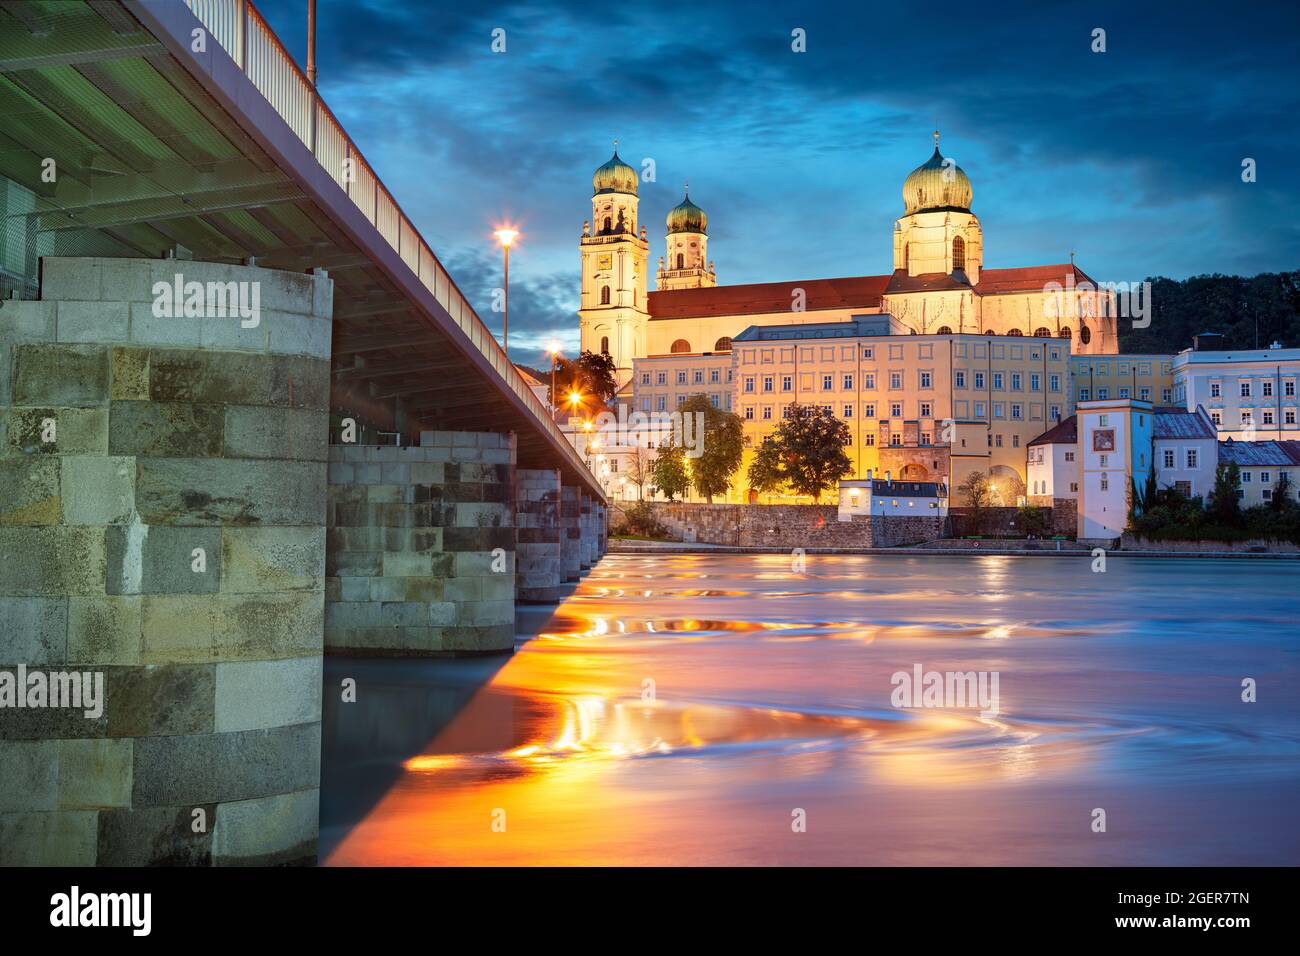 Passau, Allemagne. Image du paysage urbain de Passau avec la cathédrale Saint-Stephan et le pont Mary's ou Mariensbrucke au-dessus de la rivière Inn à l'heure bleue au crépuscule. Banque D'Images